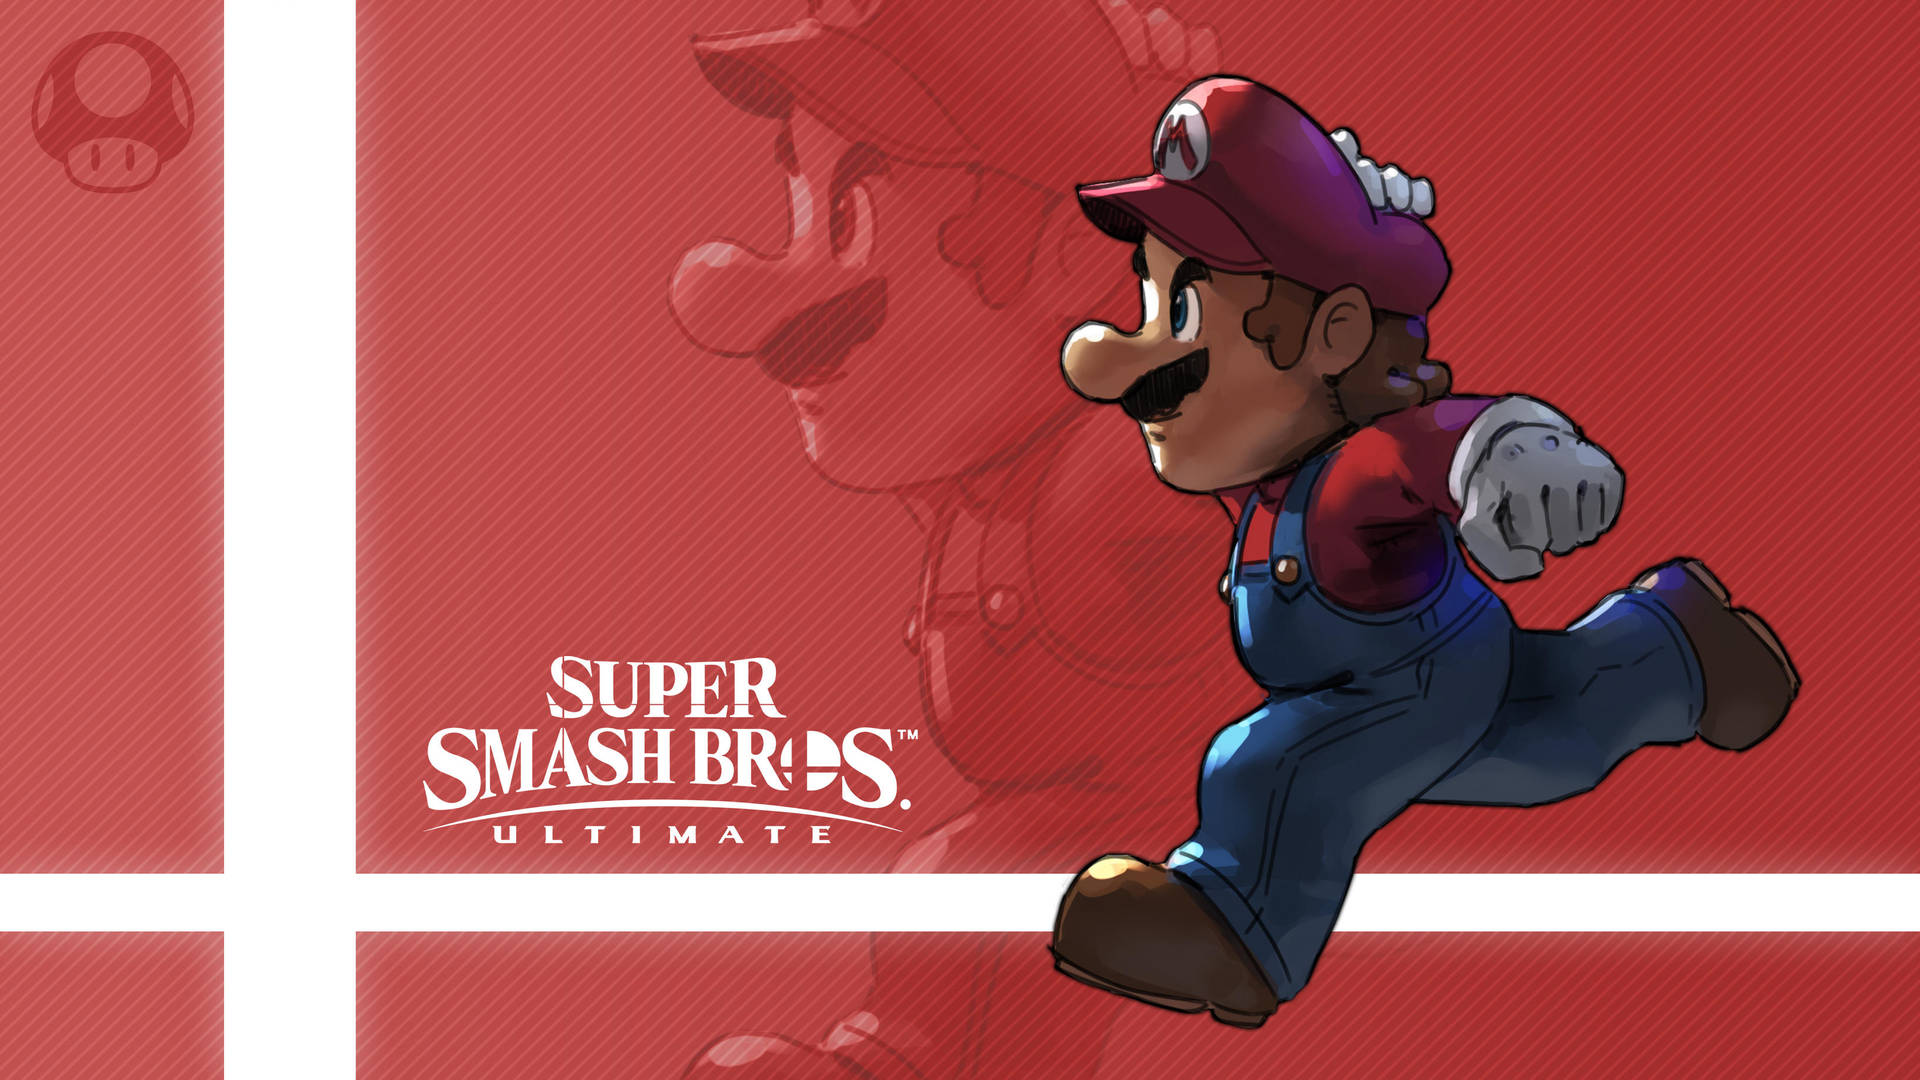 Mario Smash Bros Ultimate Fanart Wallpaper